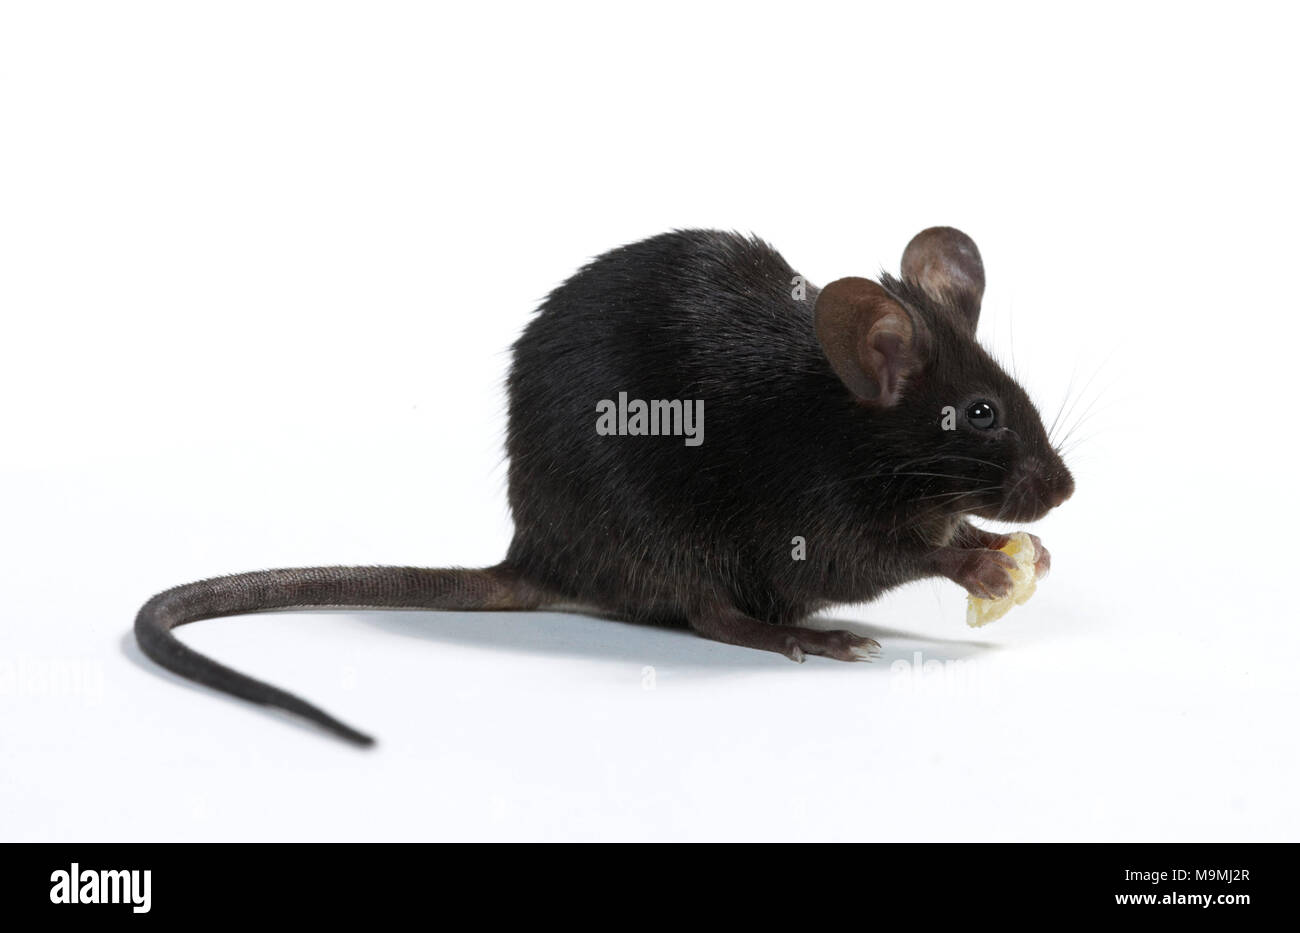 Fancy Mouse. Maschio nero seduta sulle zampe posteriori mentre mangia. Studio Immagine contro uno sfondo bianco Foto Stock